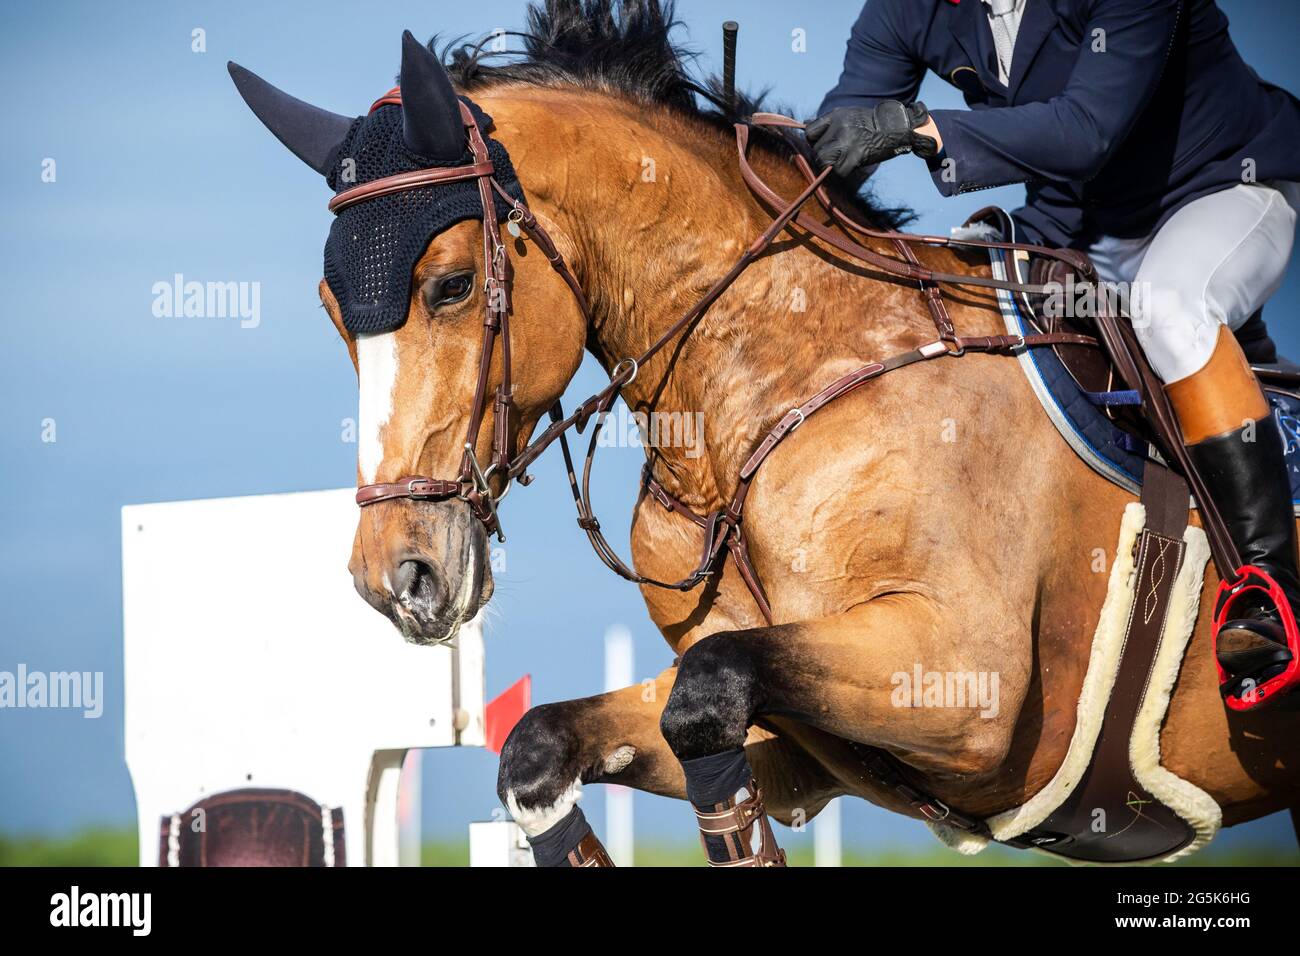 Sport equestri a tema fotografico: Salto a cavallo, salto con spettacolo, equitazione. Foto Stock